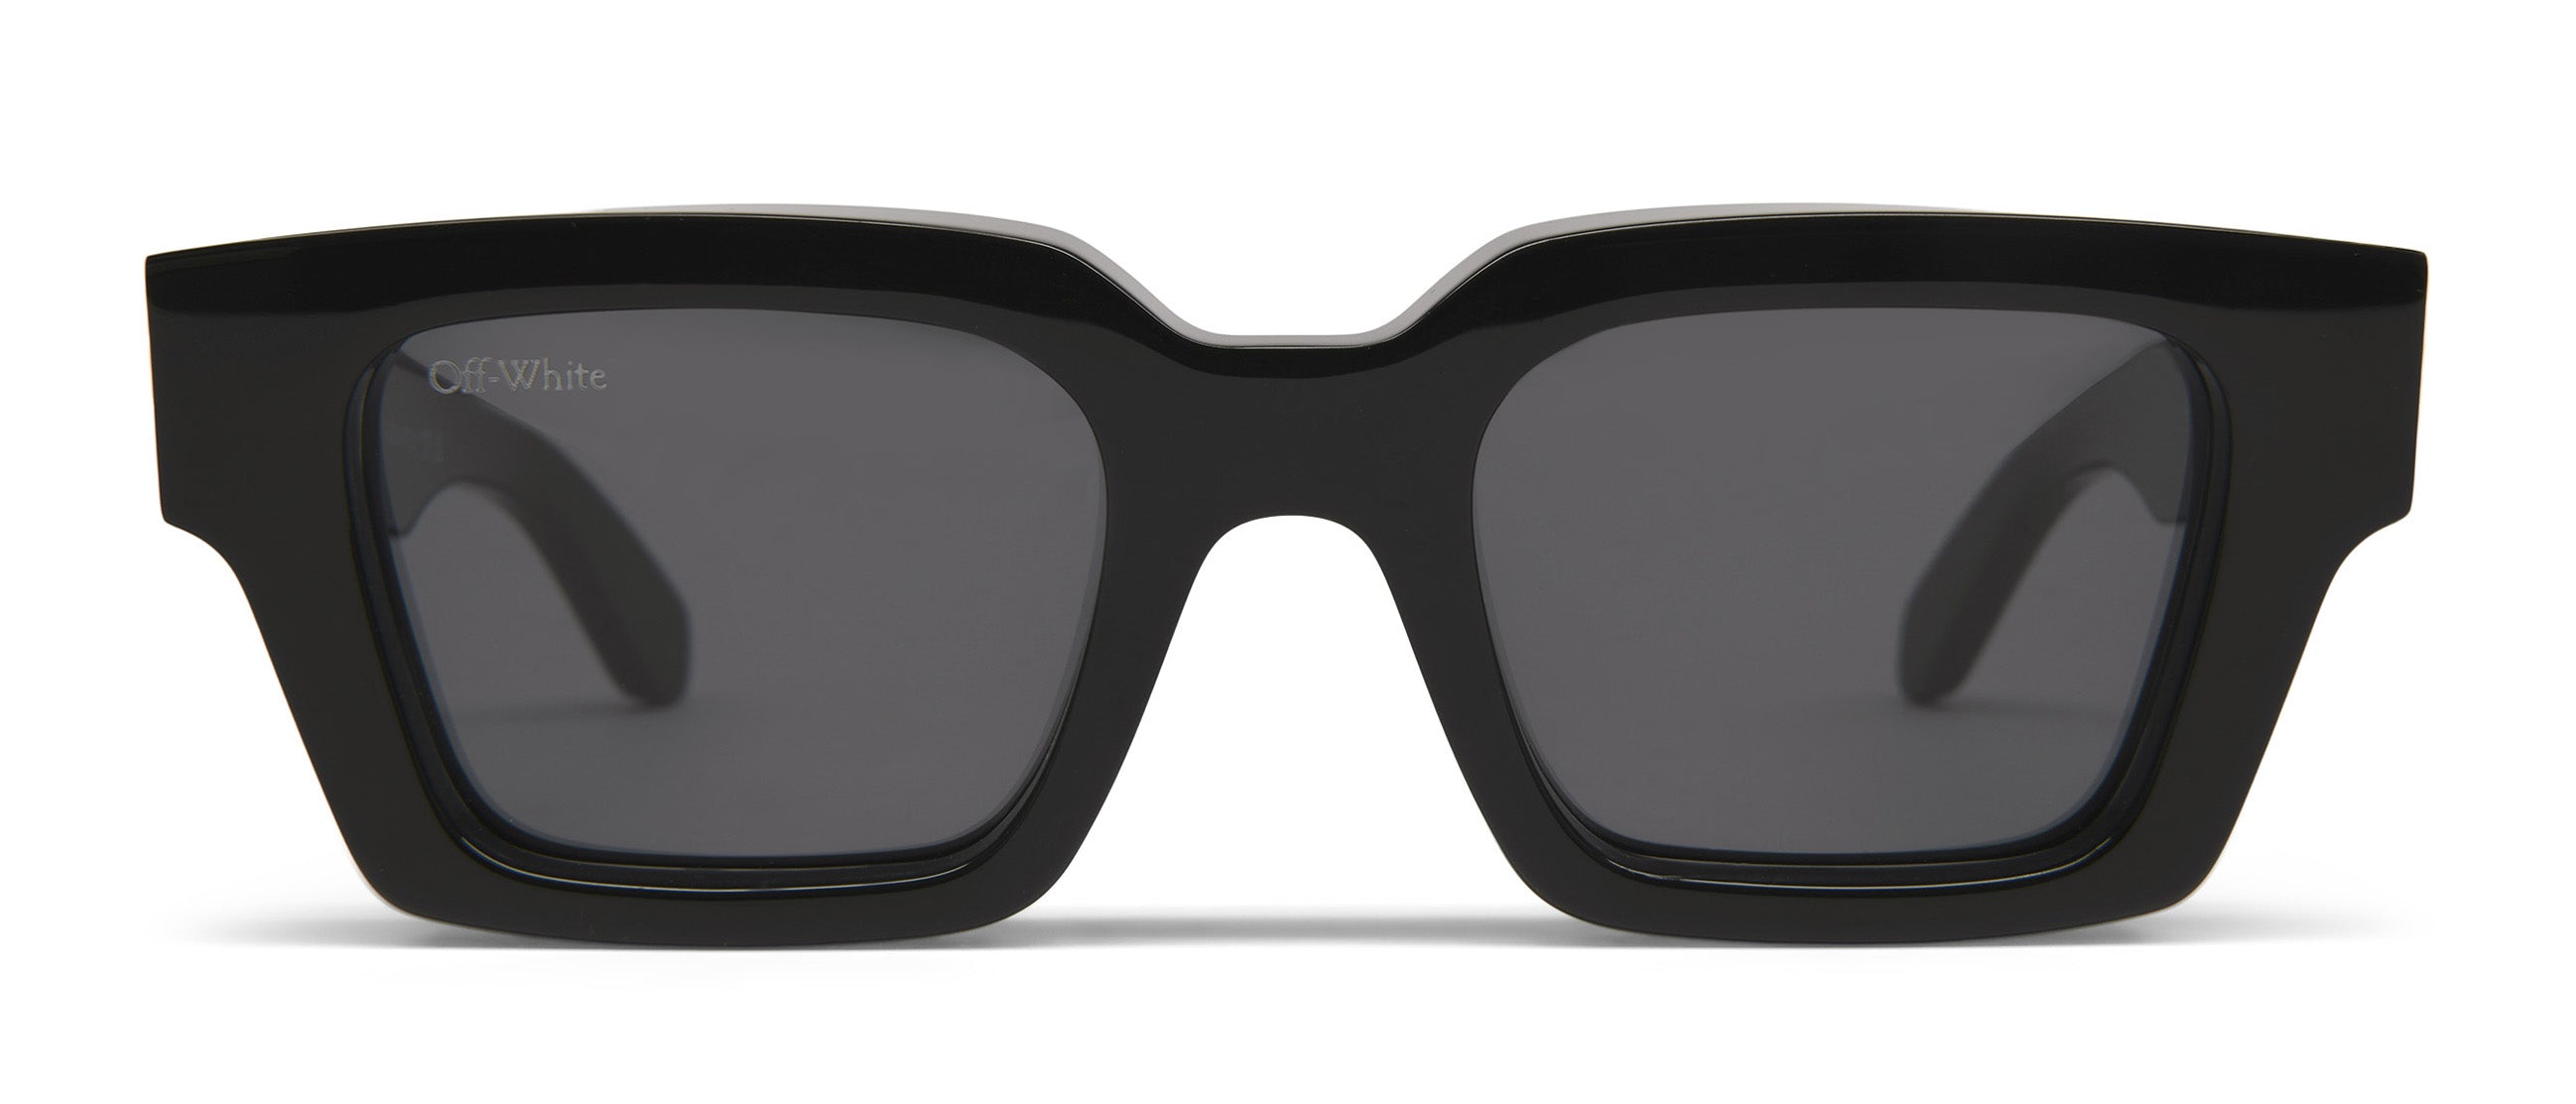 Off-White Denver Sun Cat Eye Sunglasses in Black - Grey, Custom Lenses | Visionist